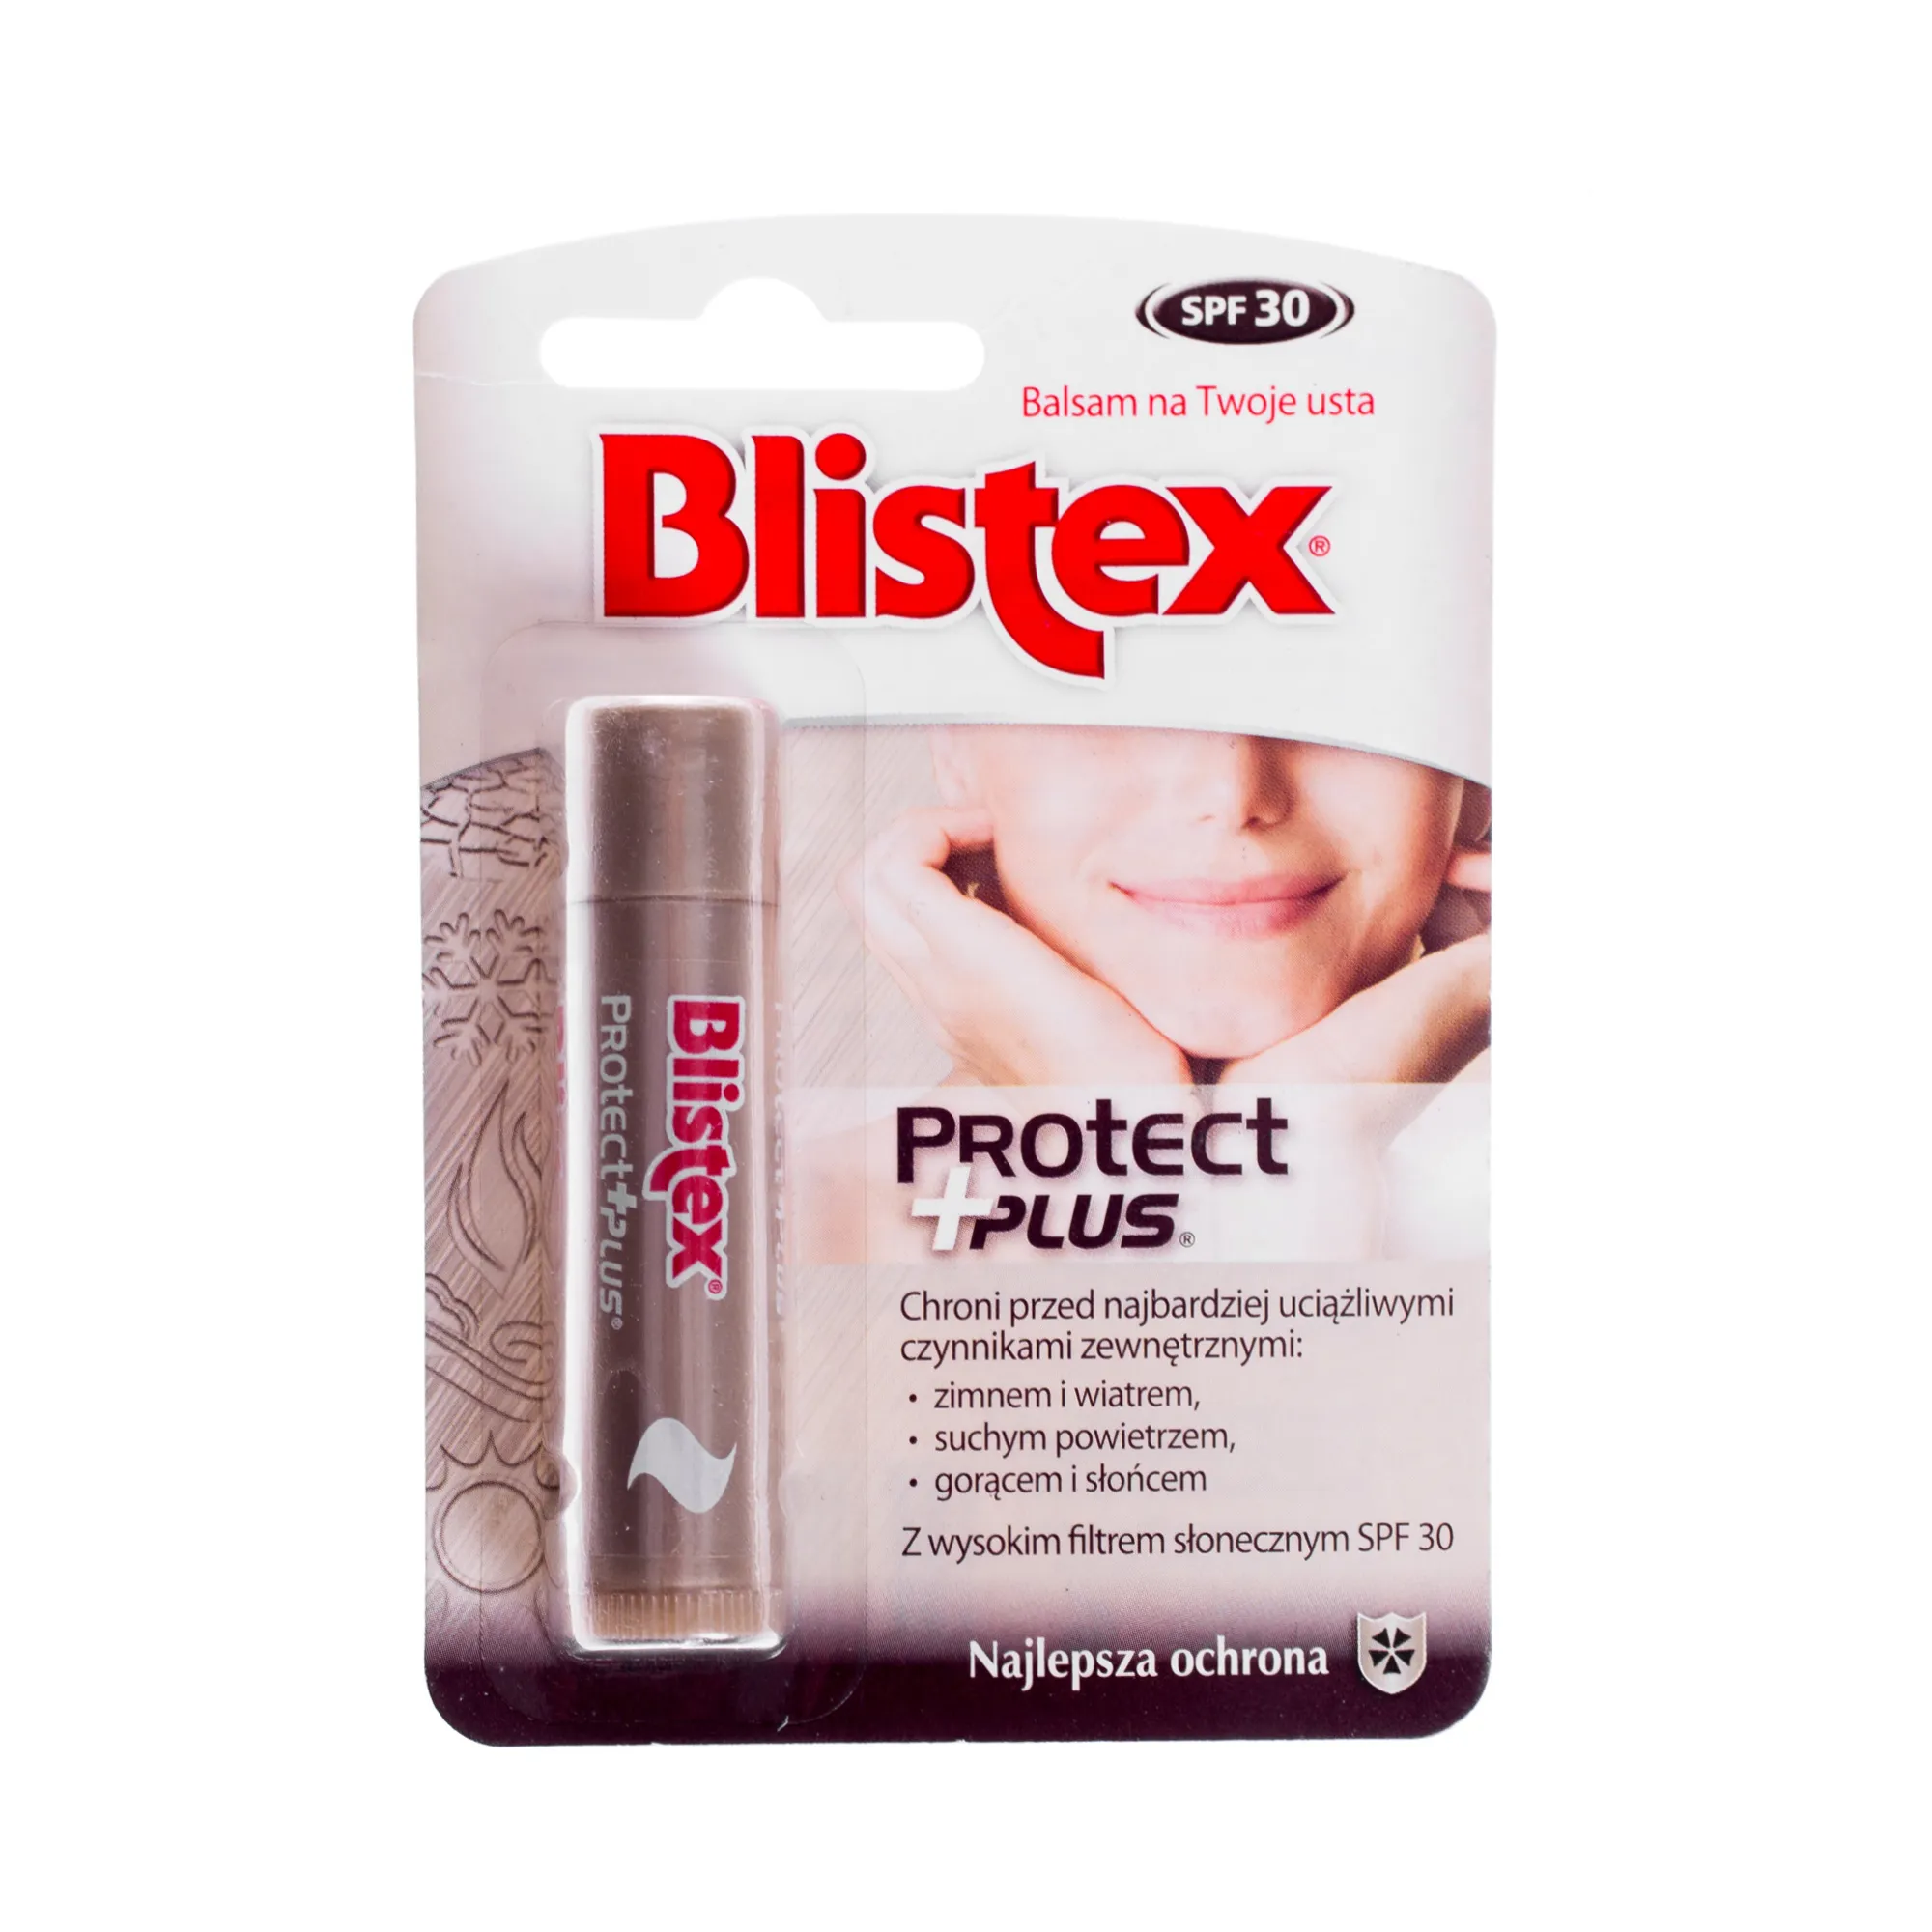 Blistex Protect + plus, balsam do ust z wysokim filtrem słonecznym SPF 30